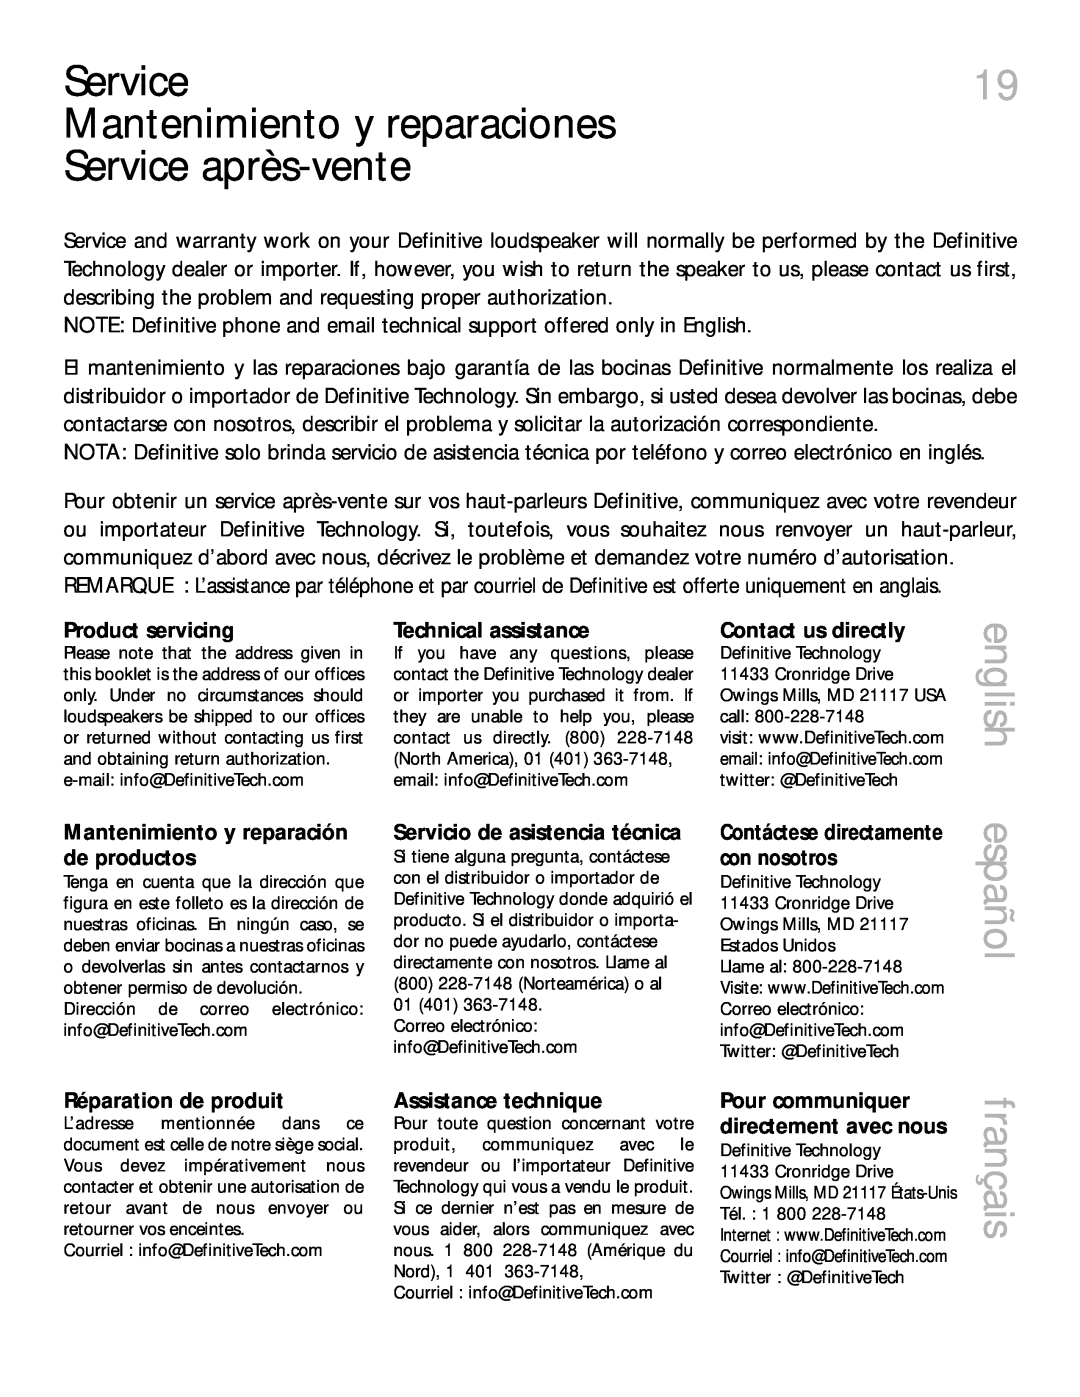 Definitive Technology 6000 Mantenimiento y reparaciones Service après-vente, Product servicing, Technical assistance 